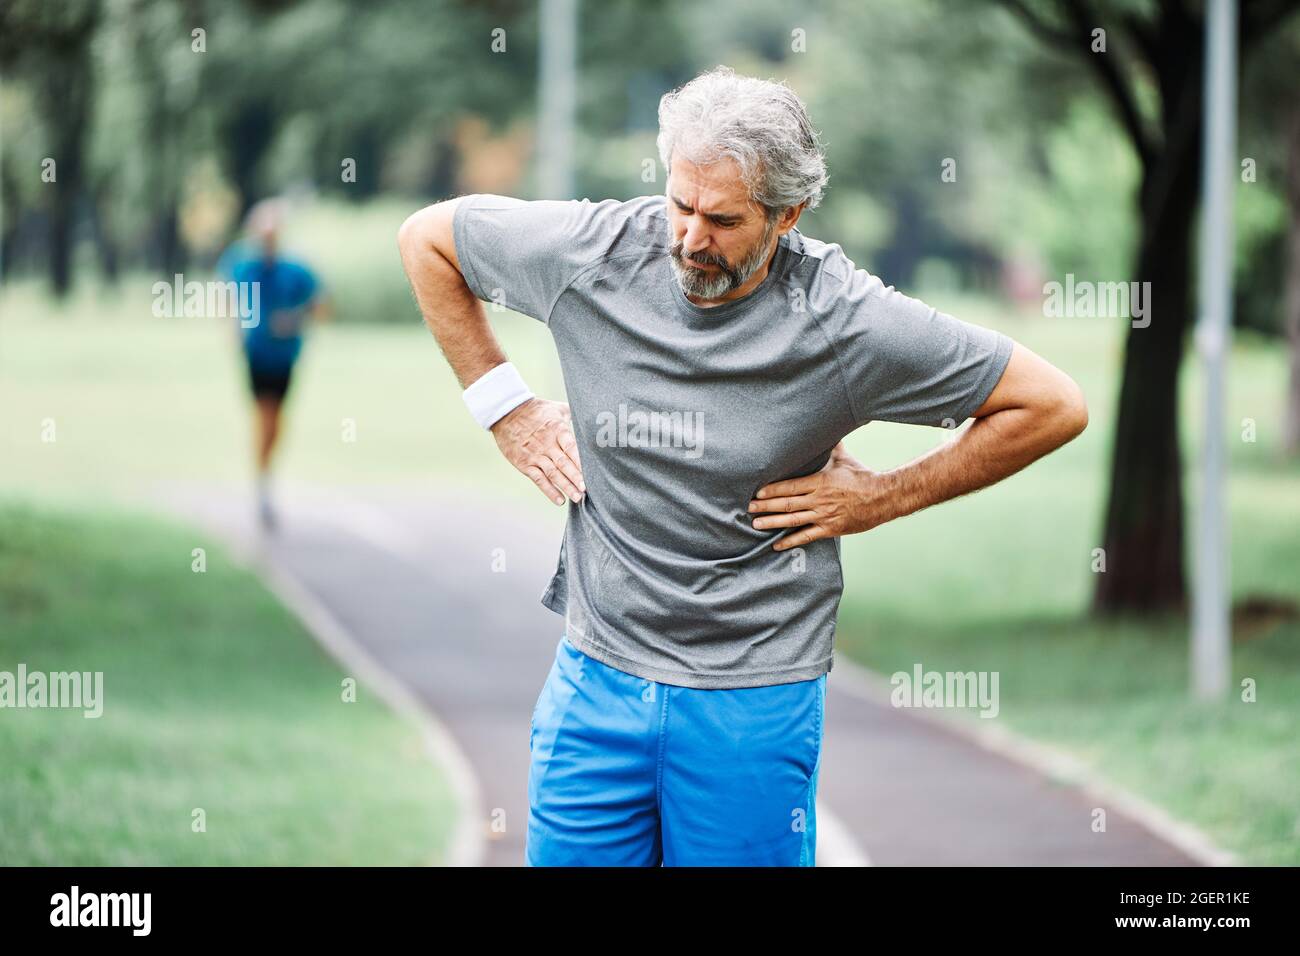 senior man running exercising sport fitness chest pain heart attack Stock Photo